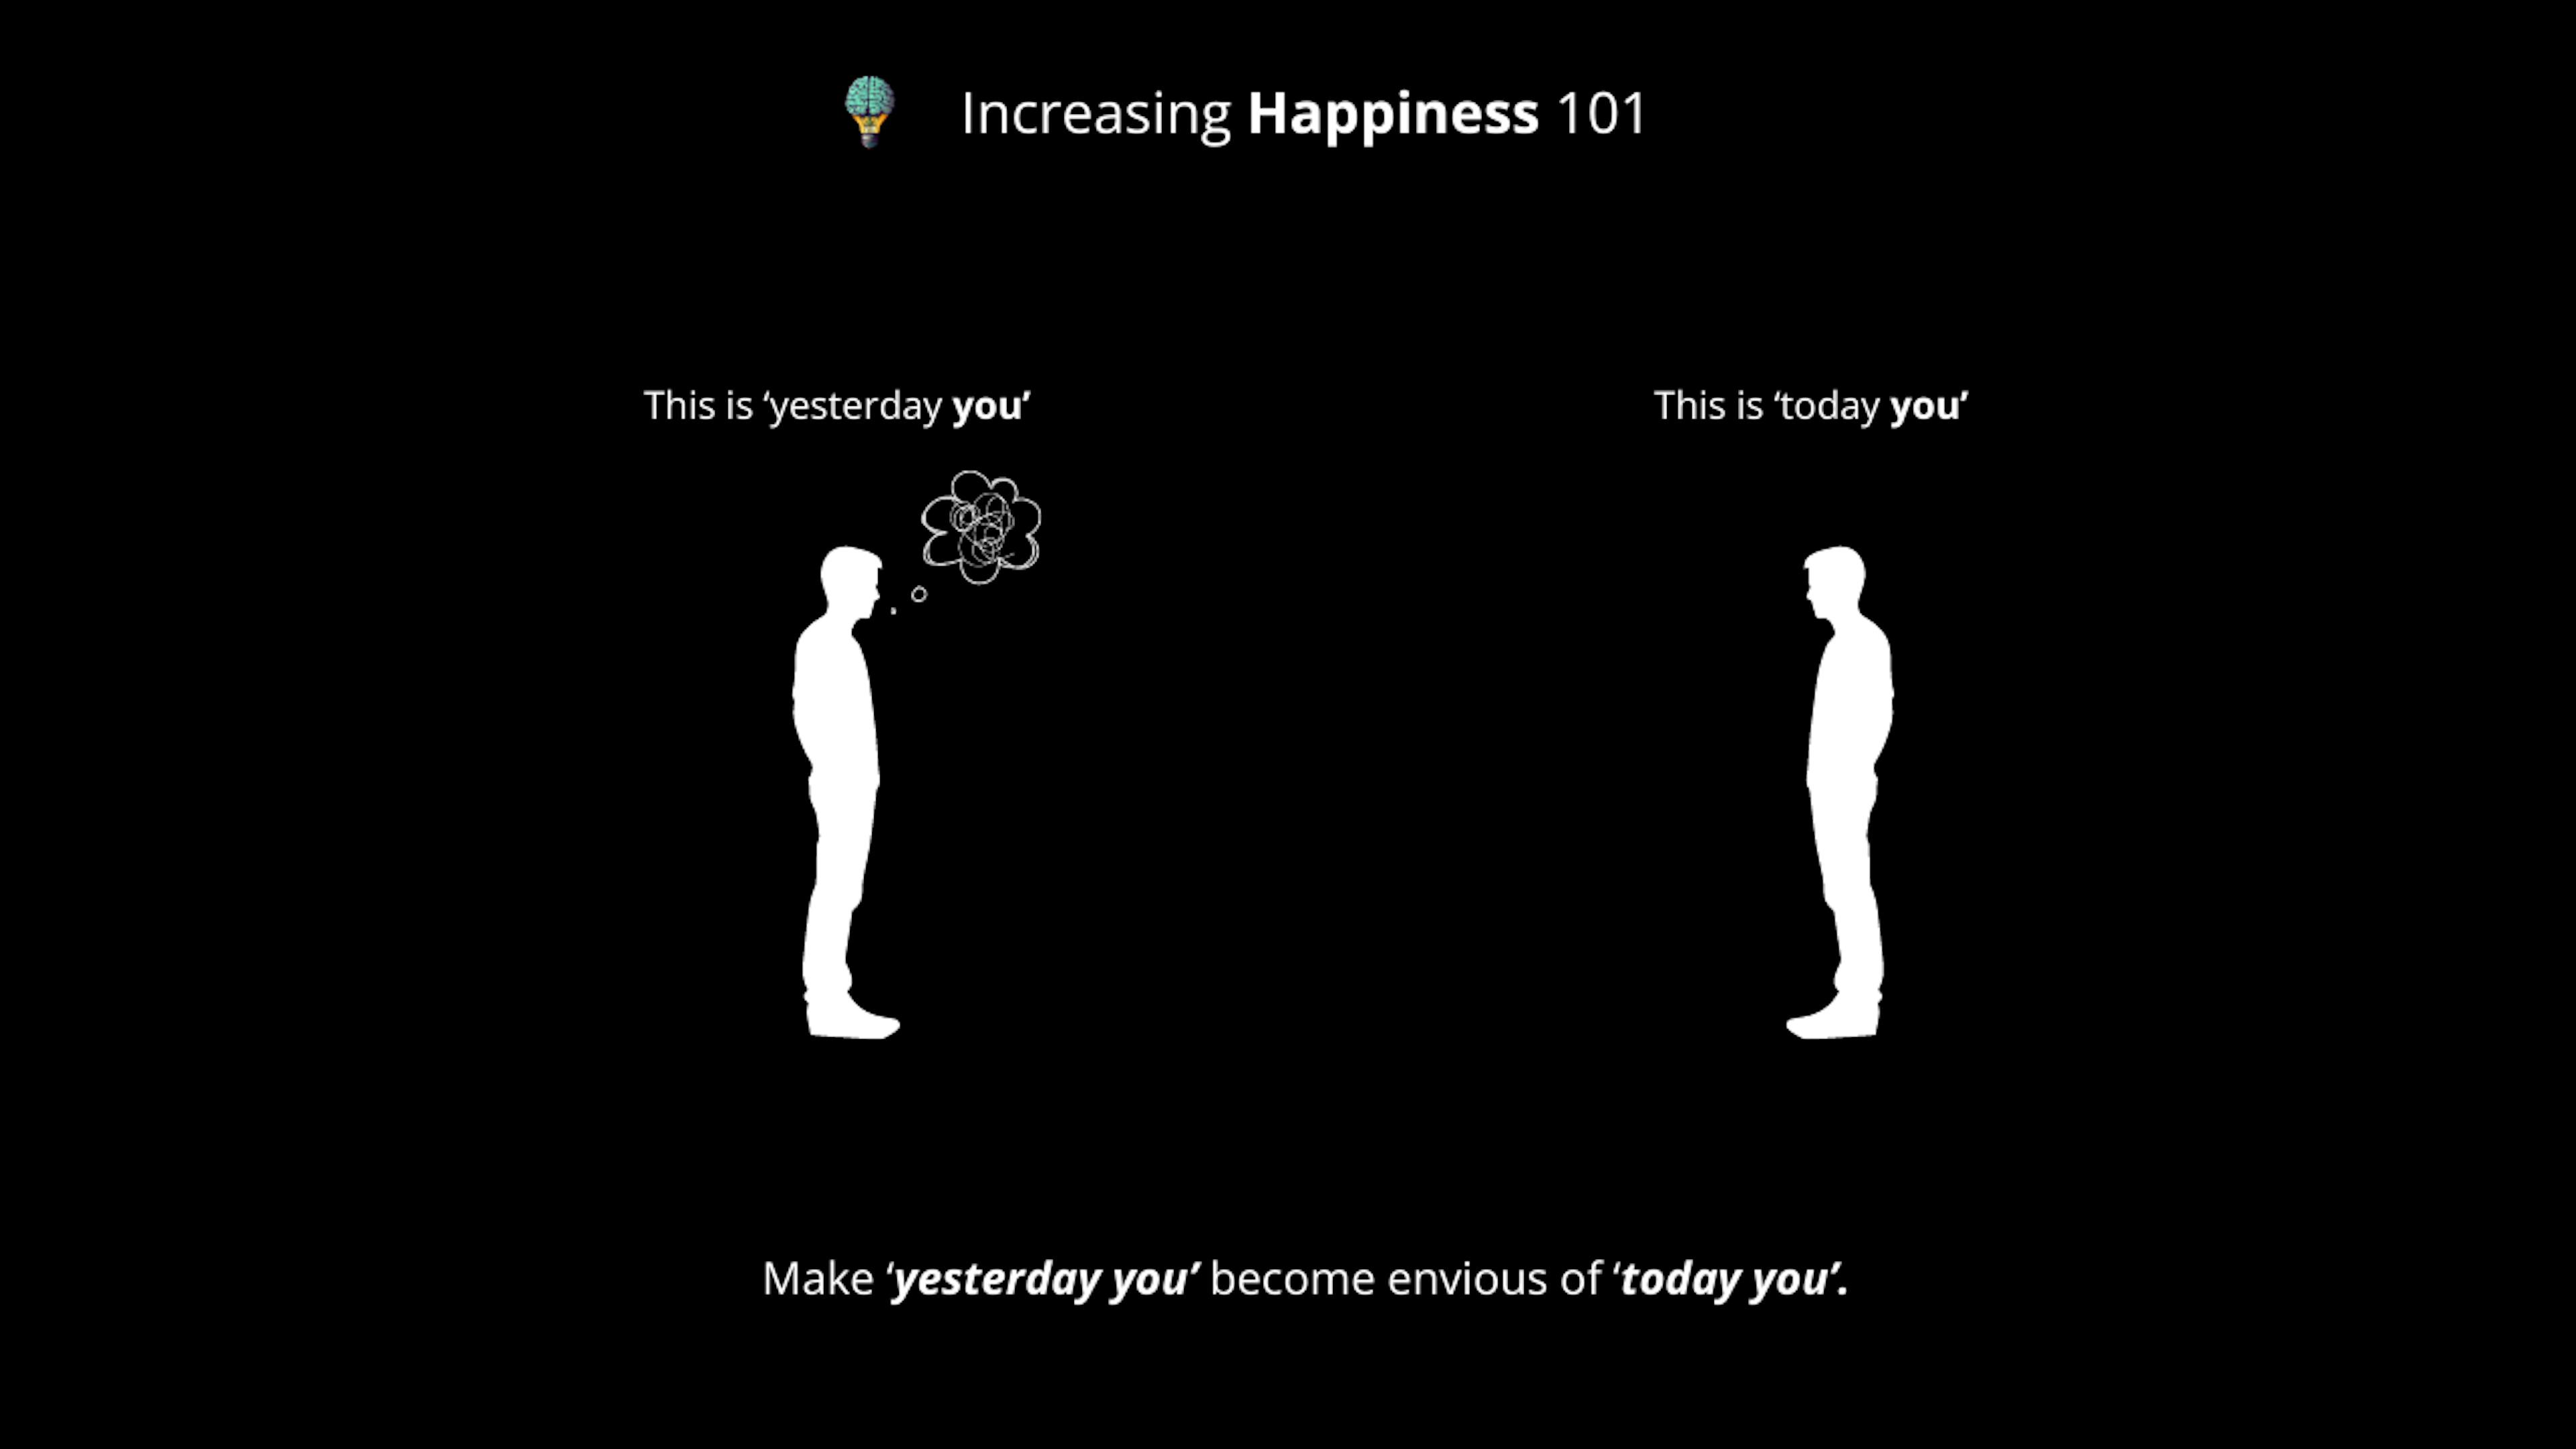 featured image - La felicidad se basa en una ecuación defectuosa: aquí se explica cómo solucionarla